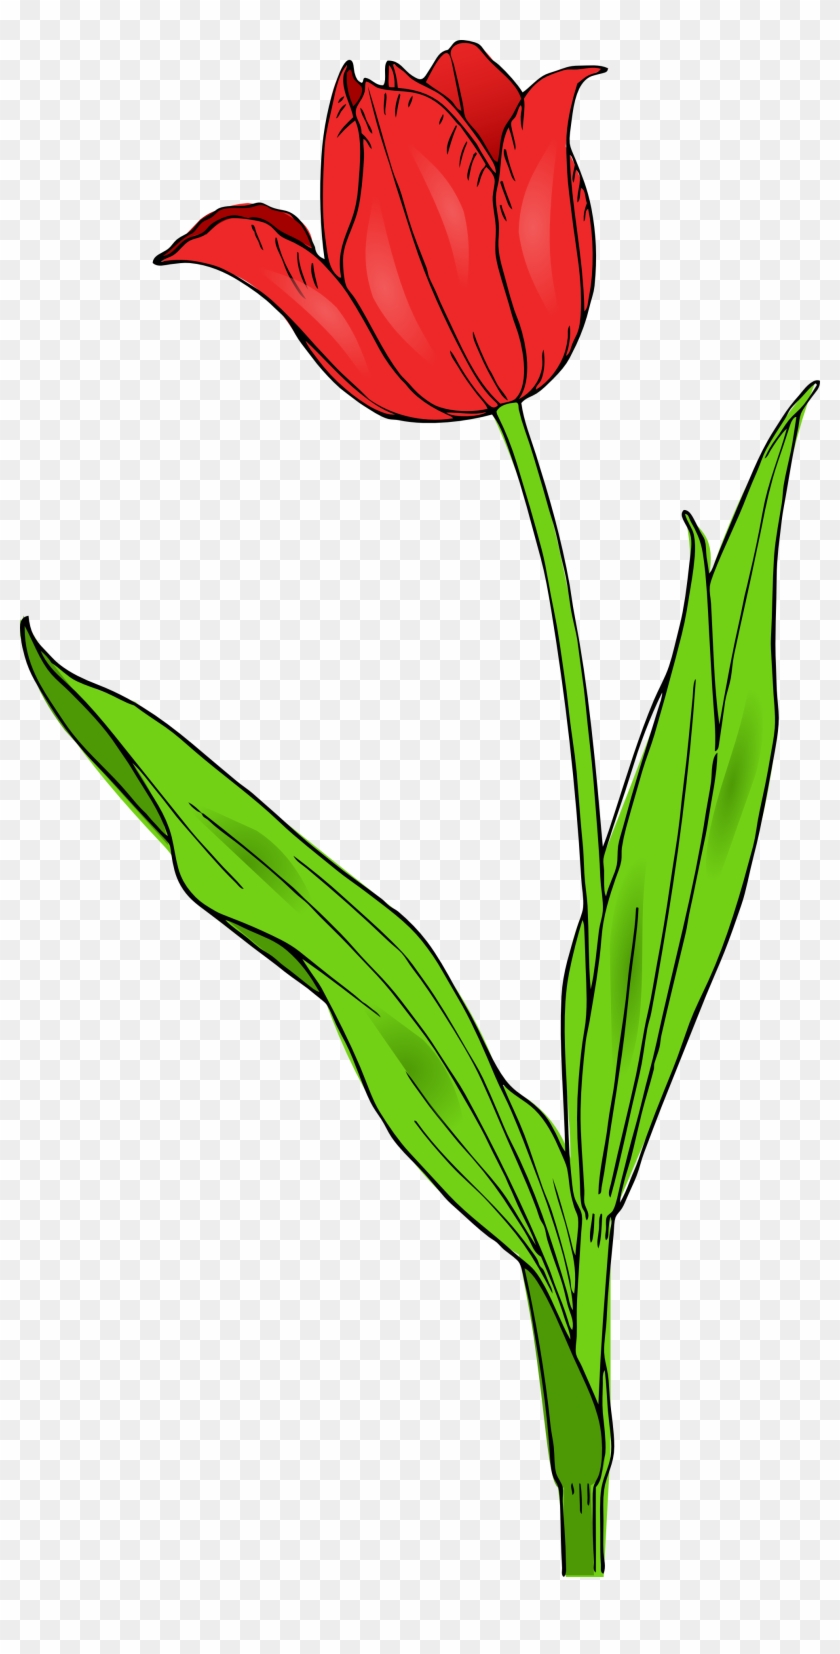 Tulip Images Clip Art - Tulip Clip Art #73542